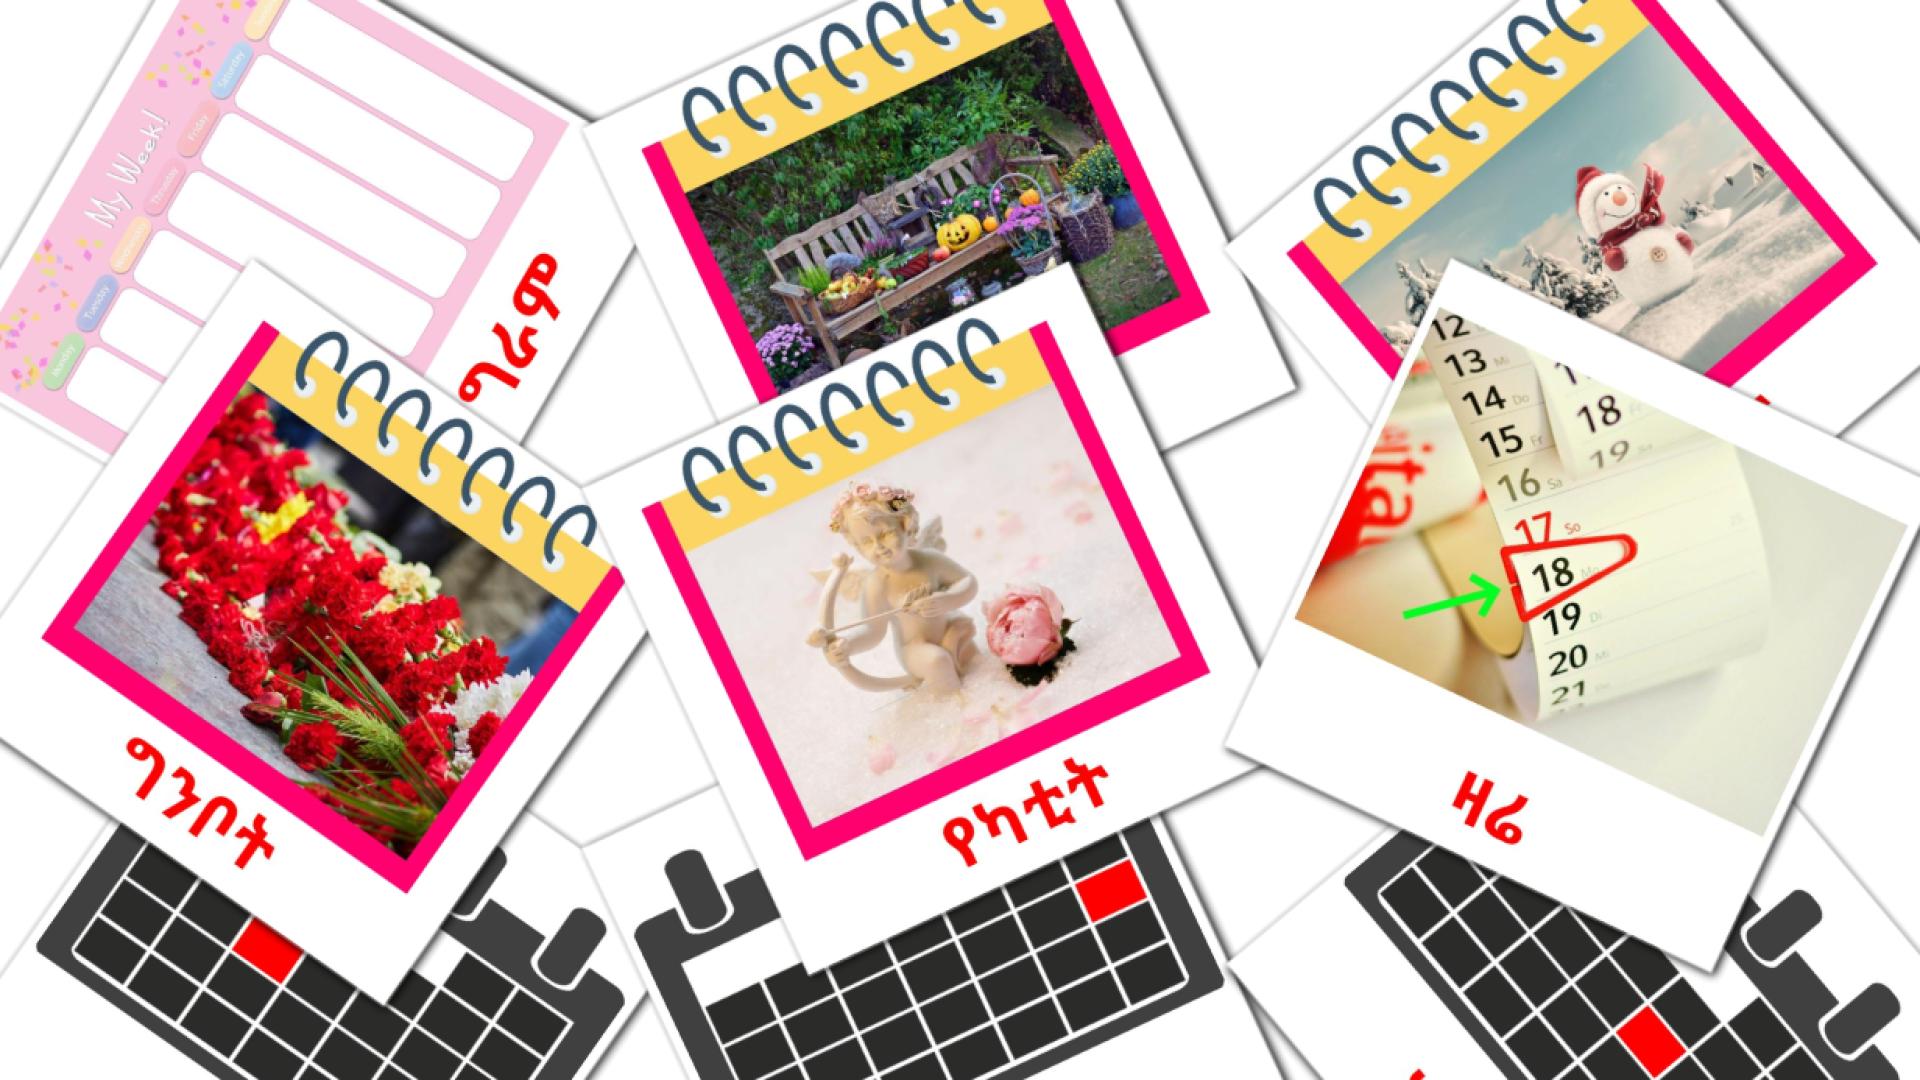 የቀንመቁጠሪያ  amharic vocabulary flashcards